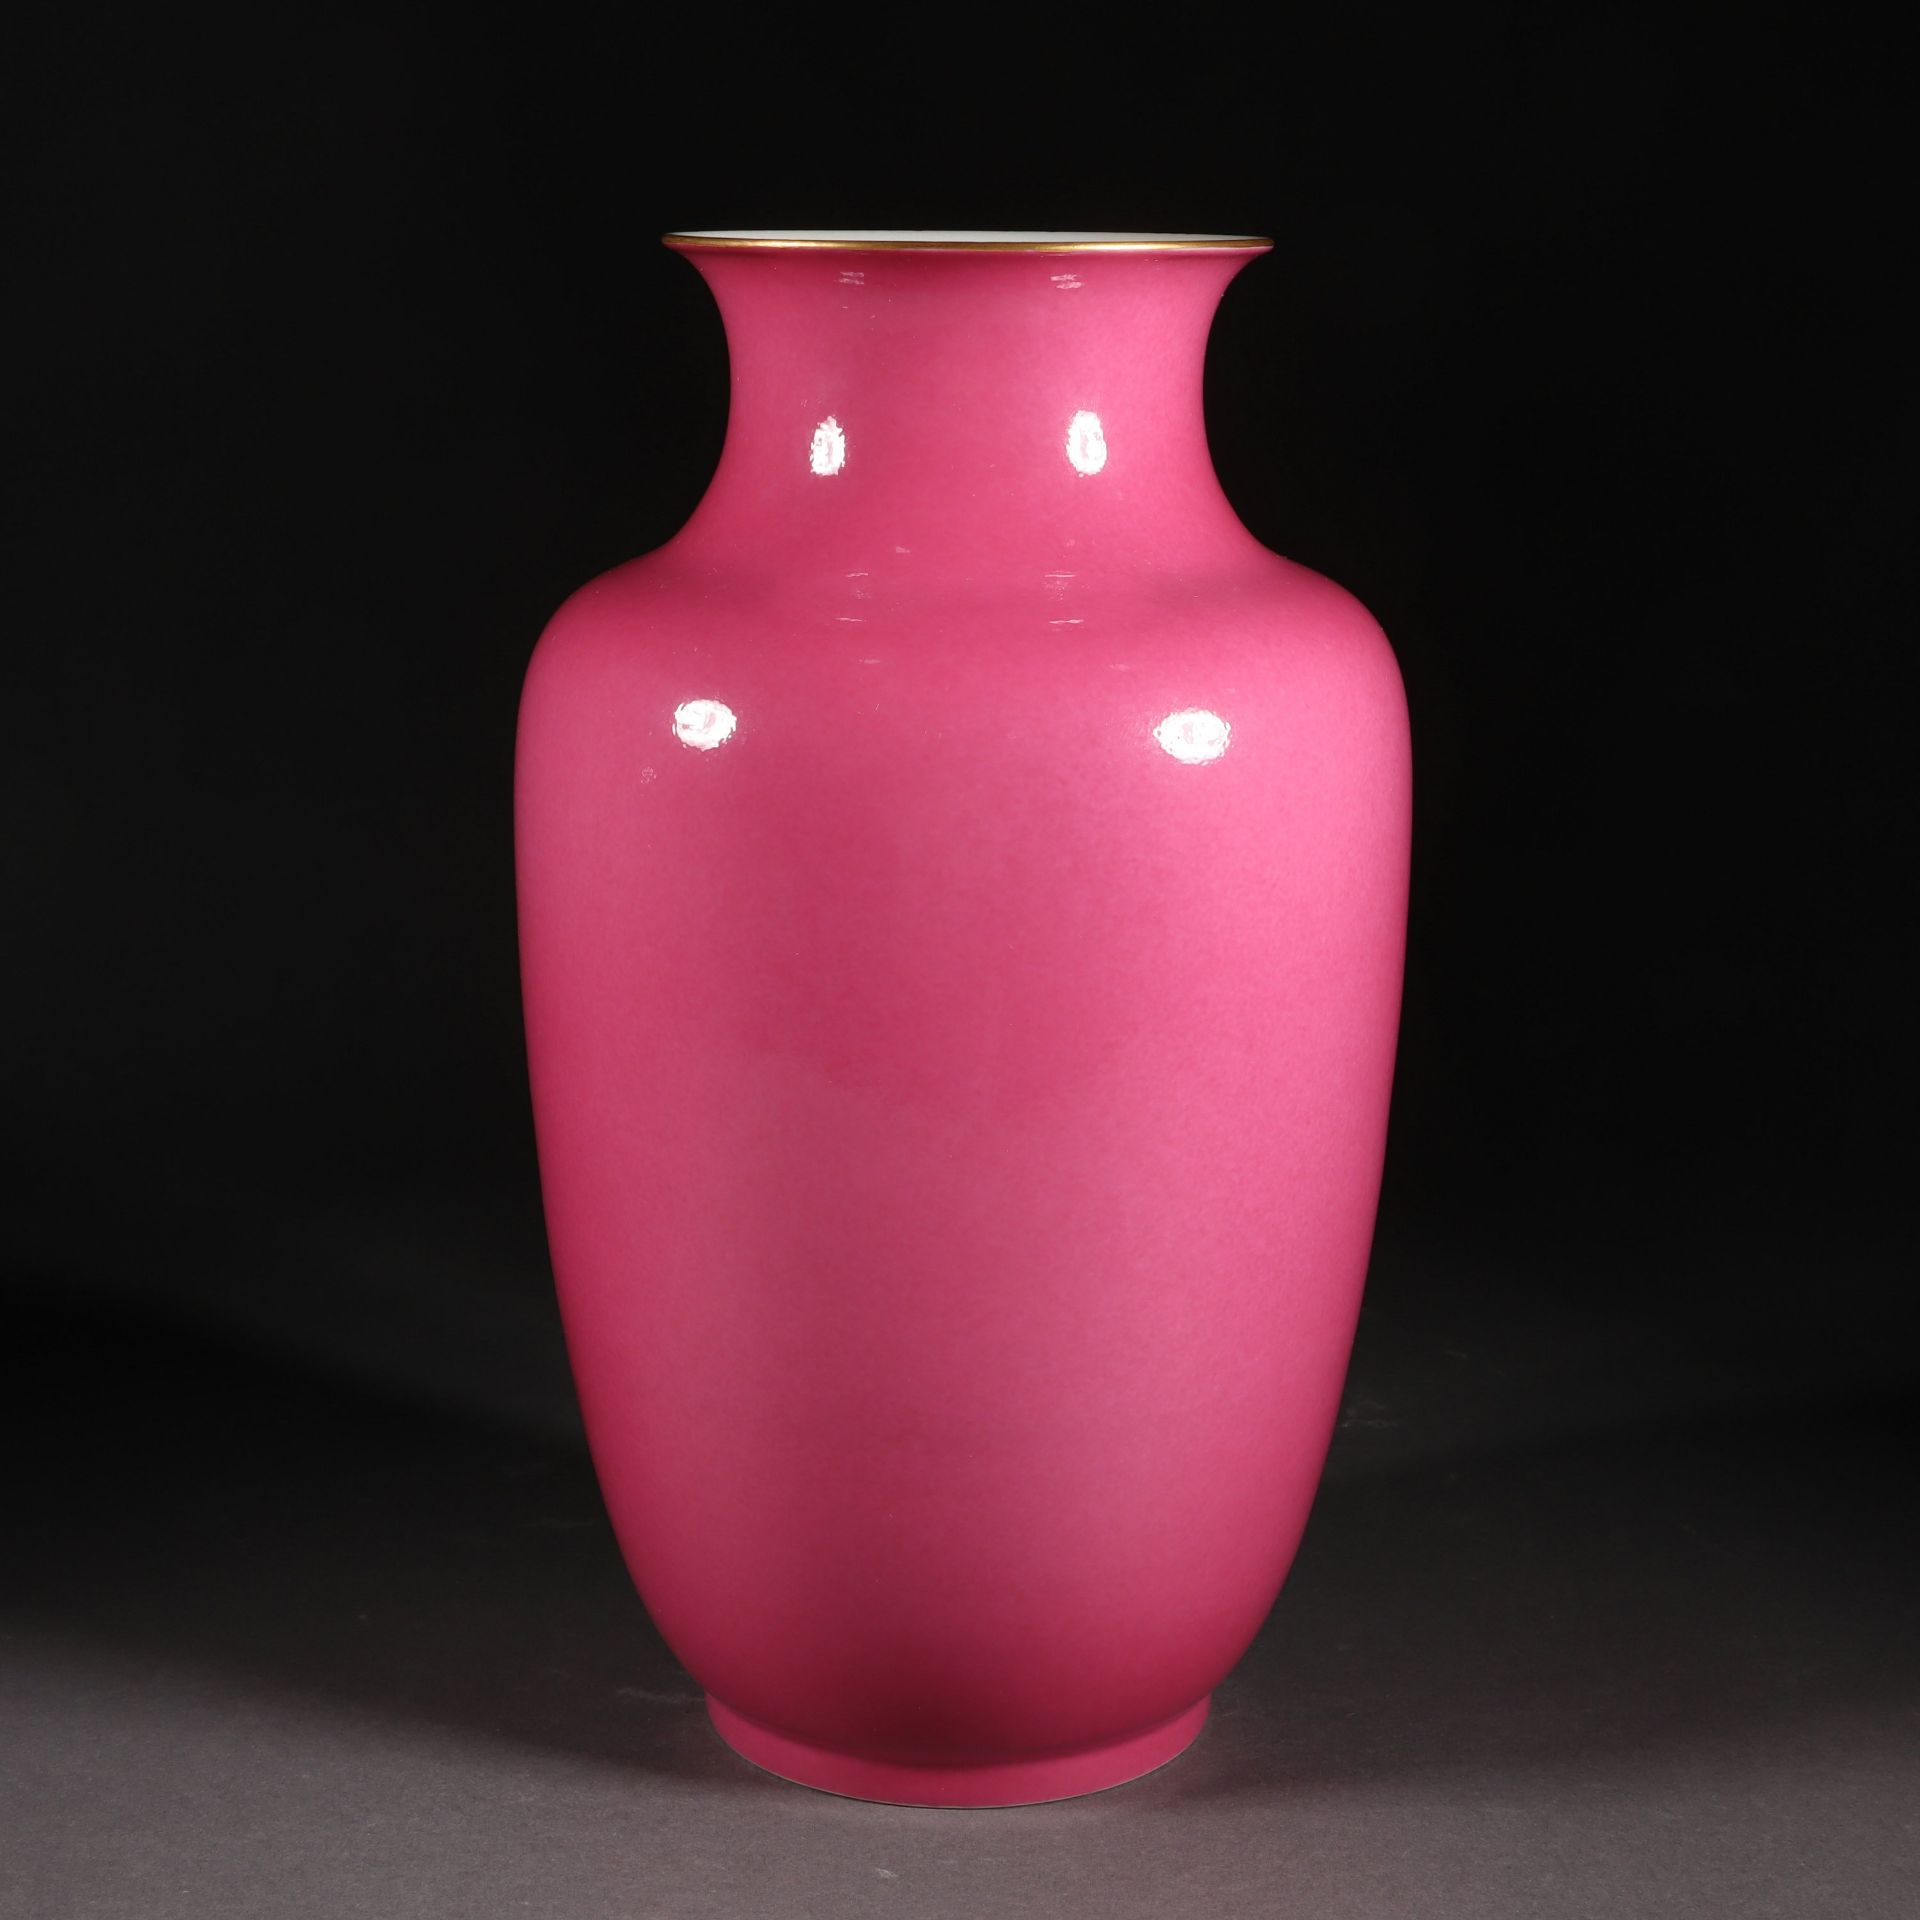 Carmine red lantern-shaped vase